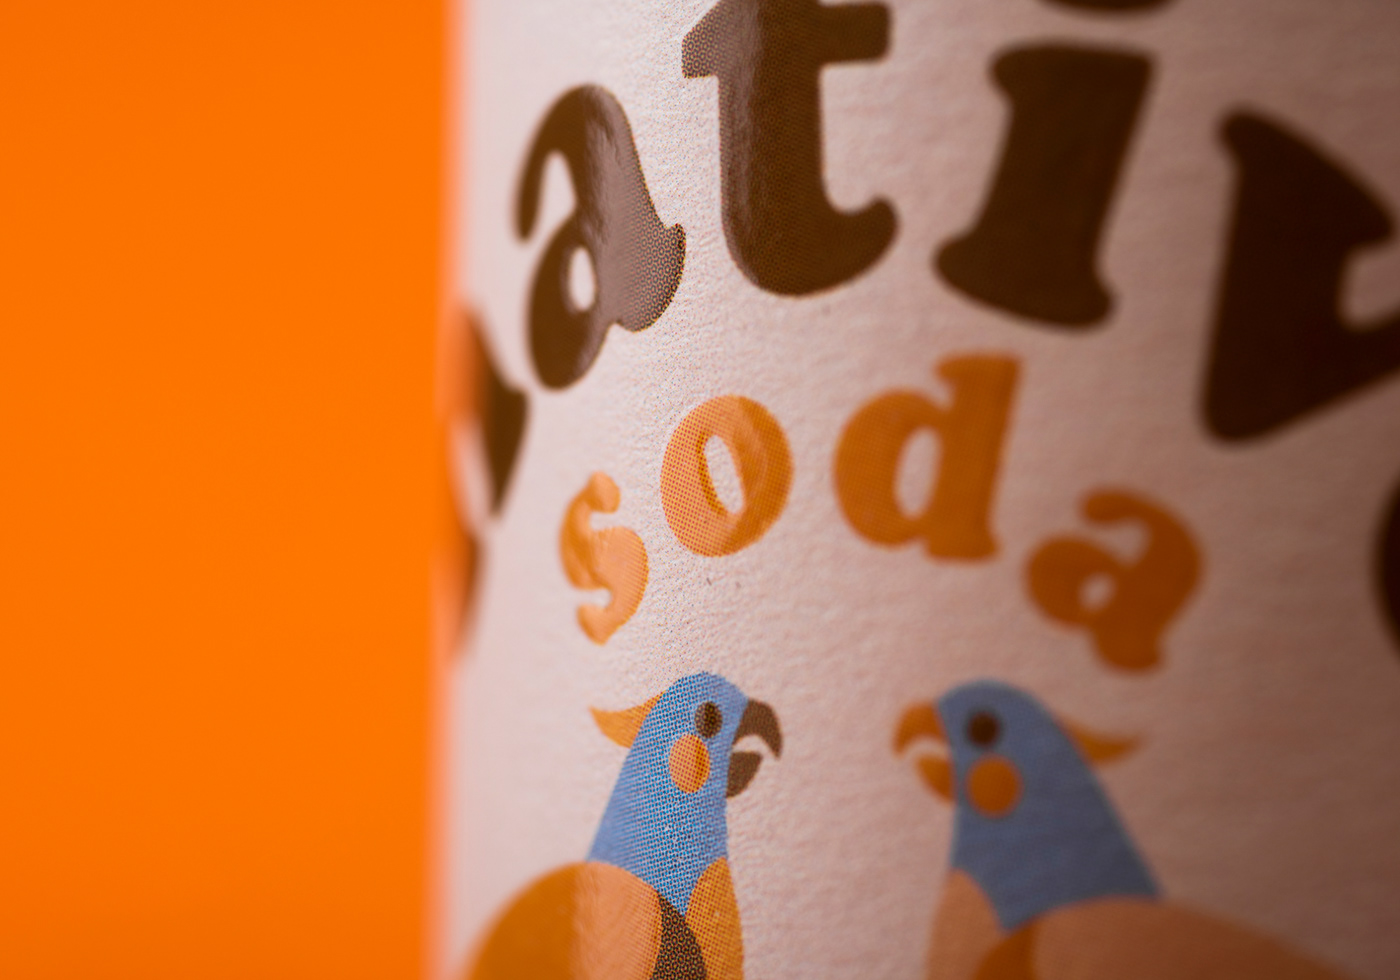 Can Design drink design non alcoholic Seltzer soda